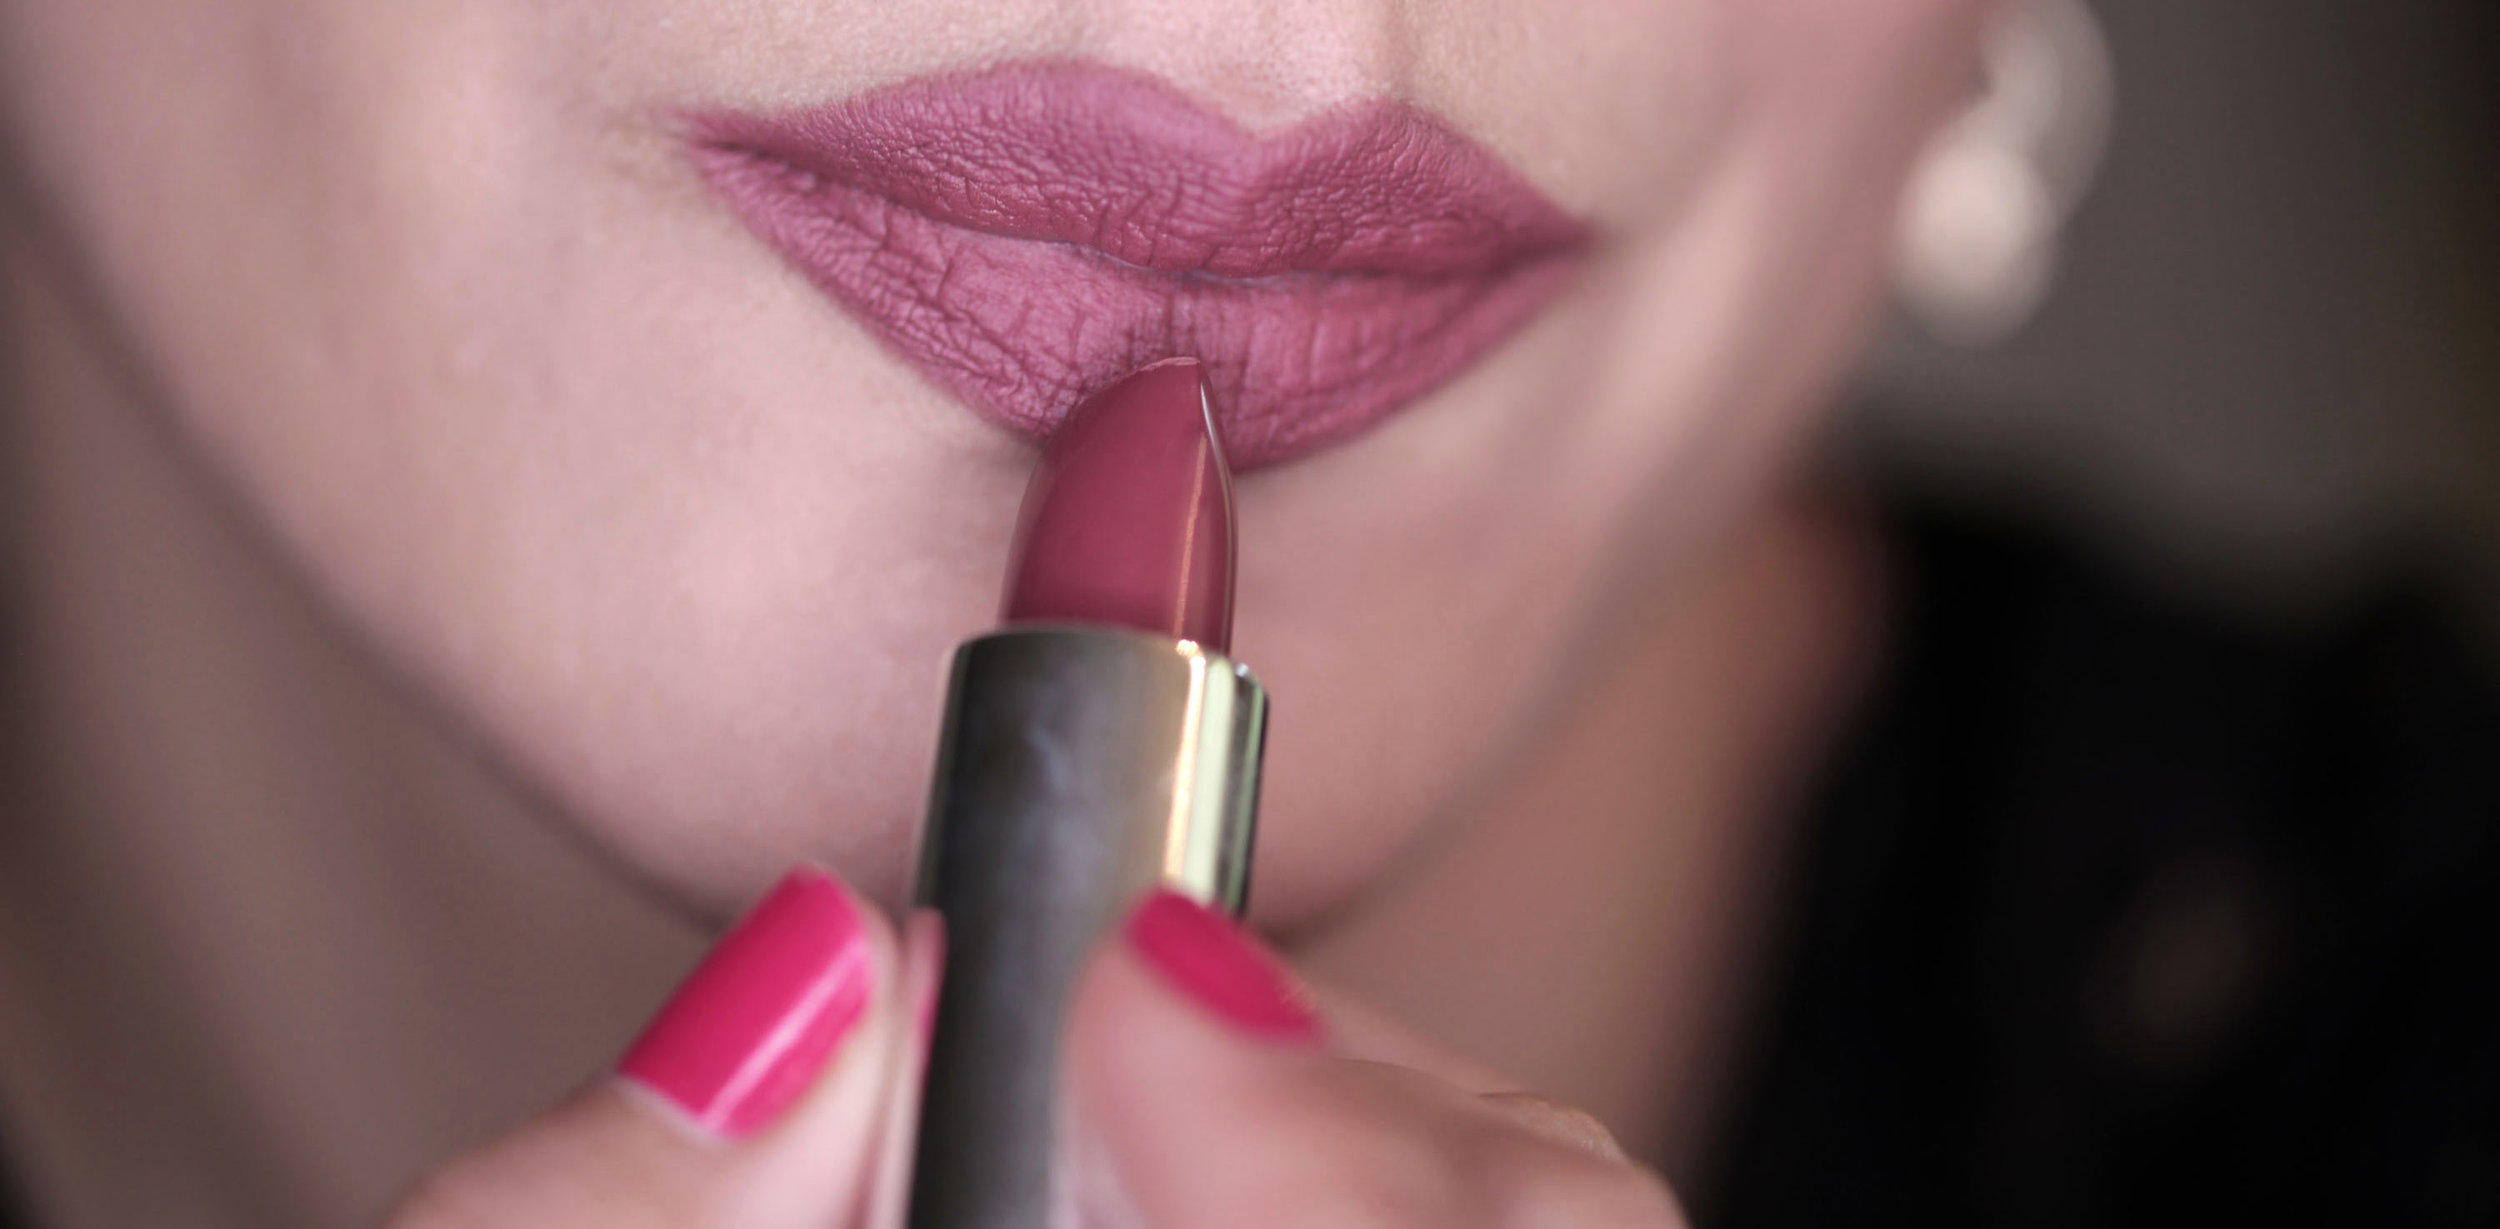 Full Face using Kat Von D Lolita - eyeshadow + blush + lipstick - swatches_0394.JPG